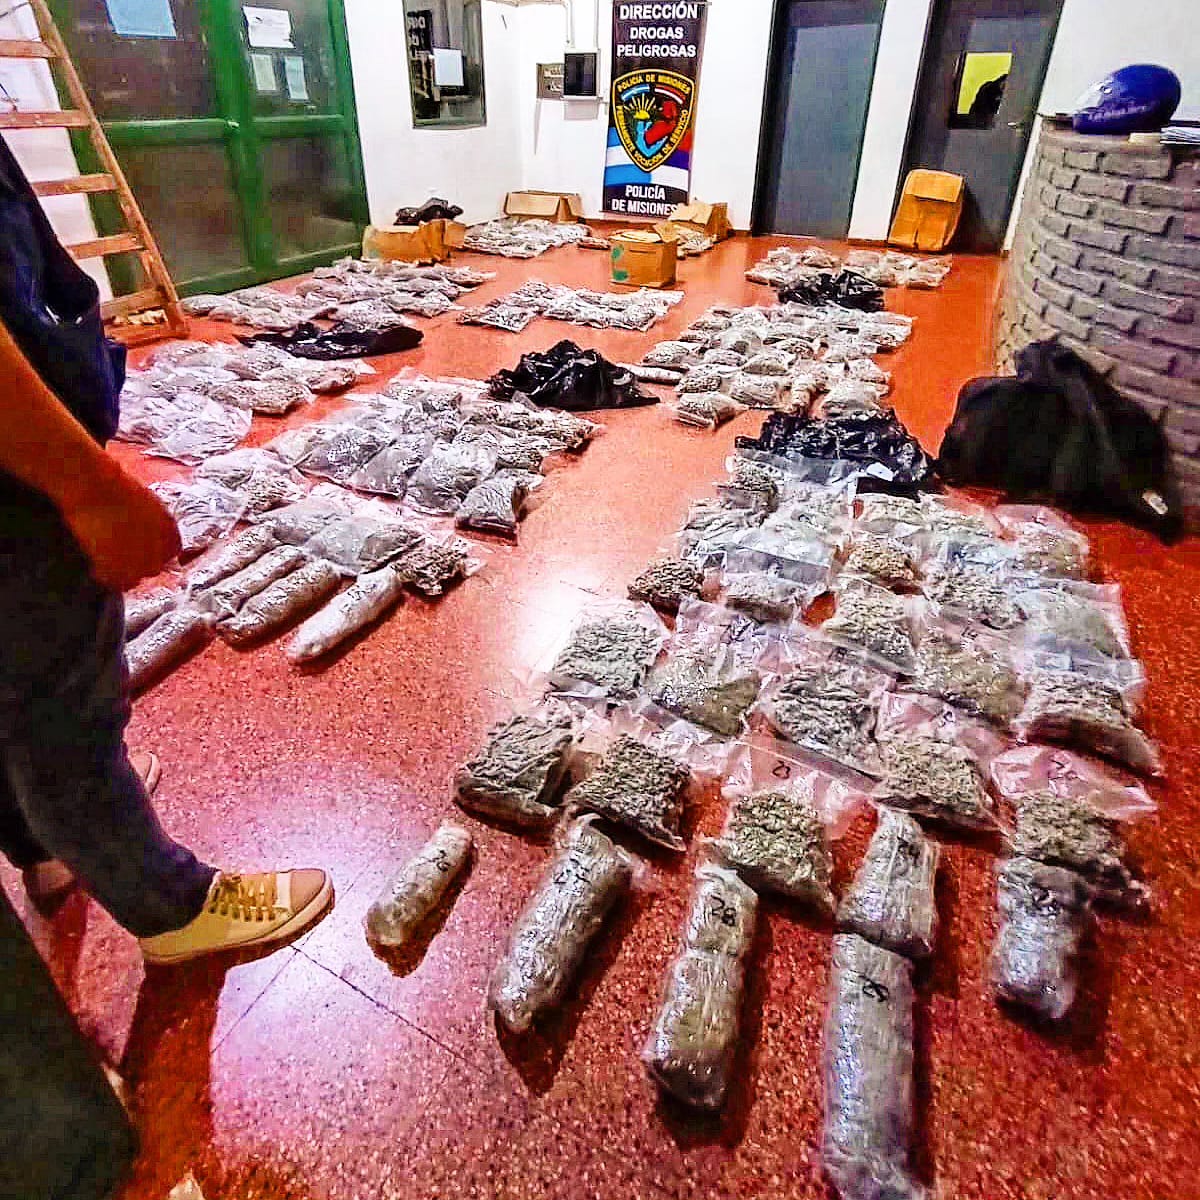 Operativo policial encubierto reveló escondite con más de 100 kilos de marihuana imagen-1